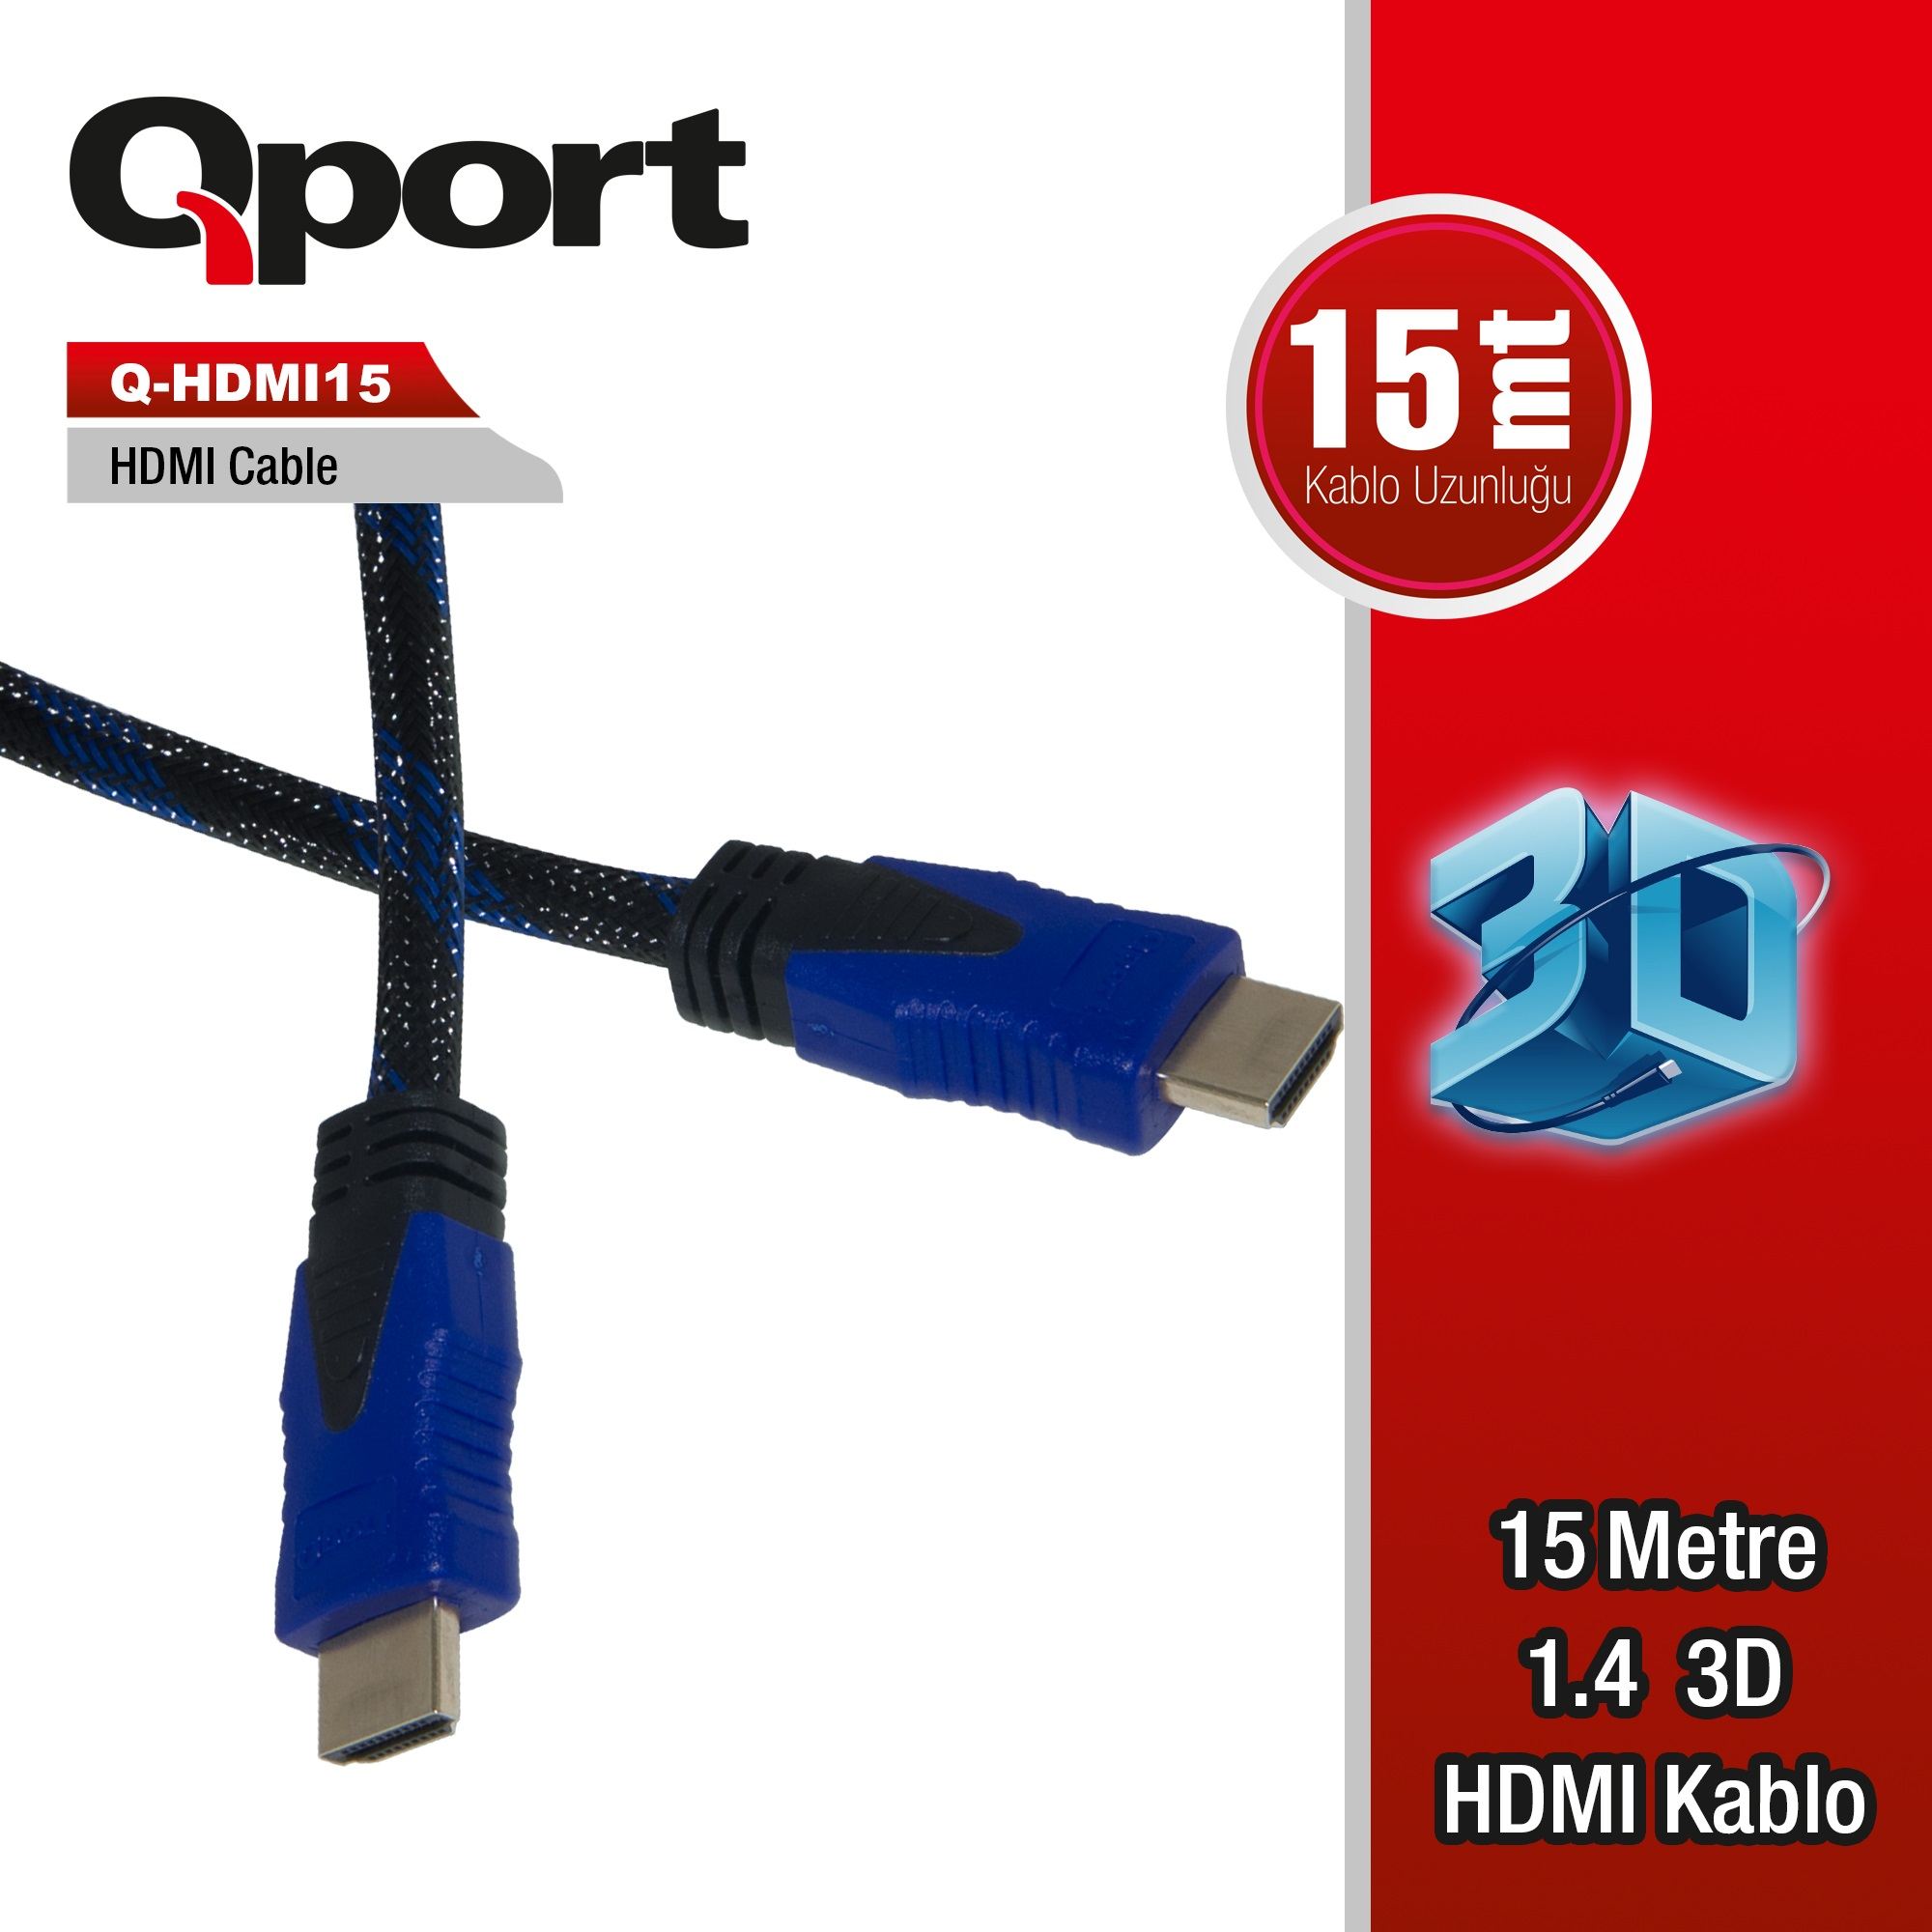 QPORT Q-HDMI15 HDMI KABLO 15MT Ver1.4 ALTIN UÇLU 3D